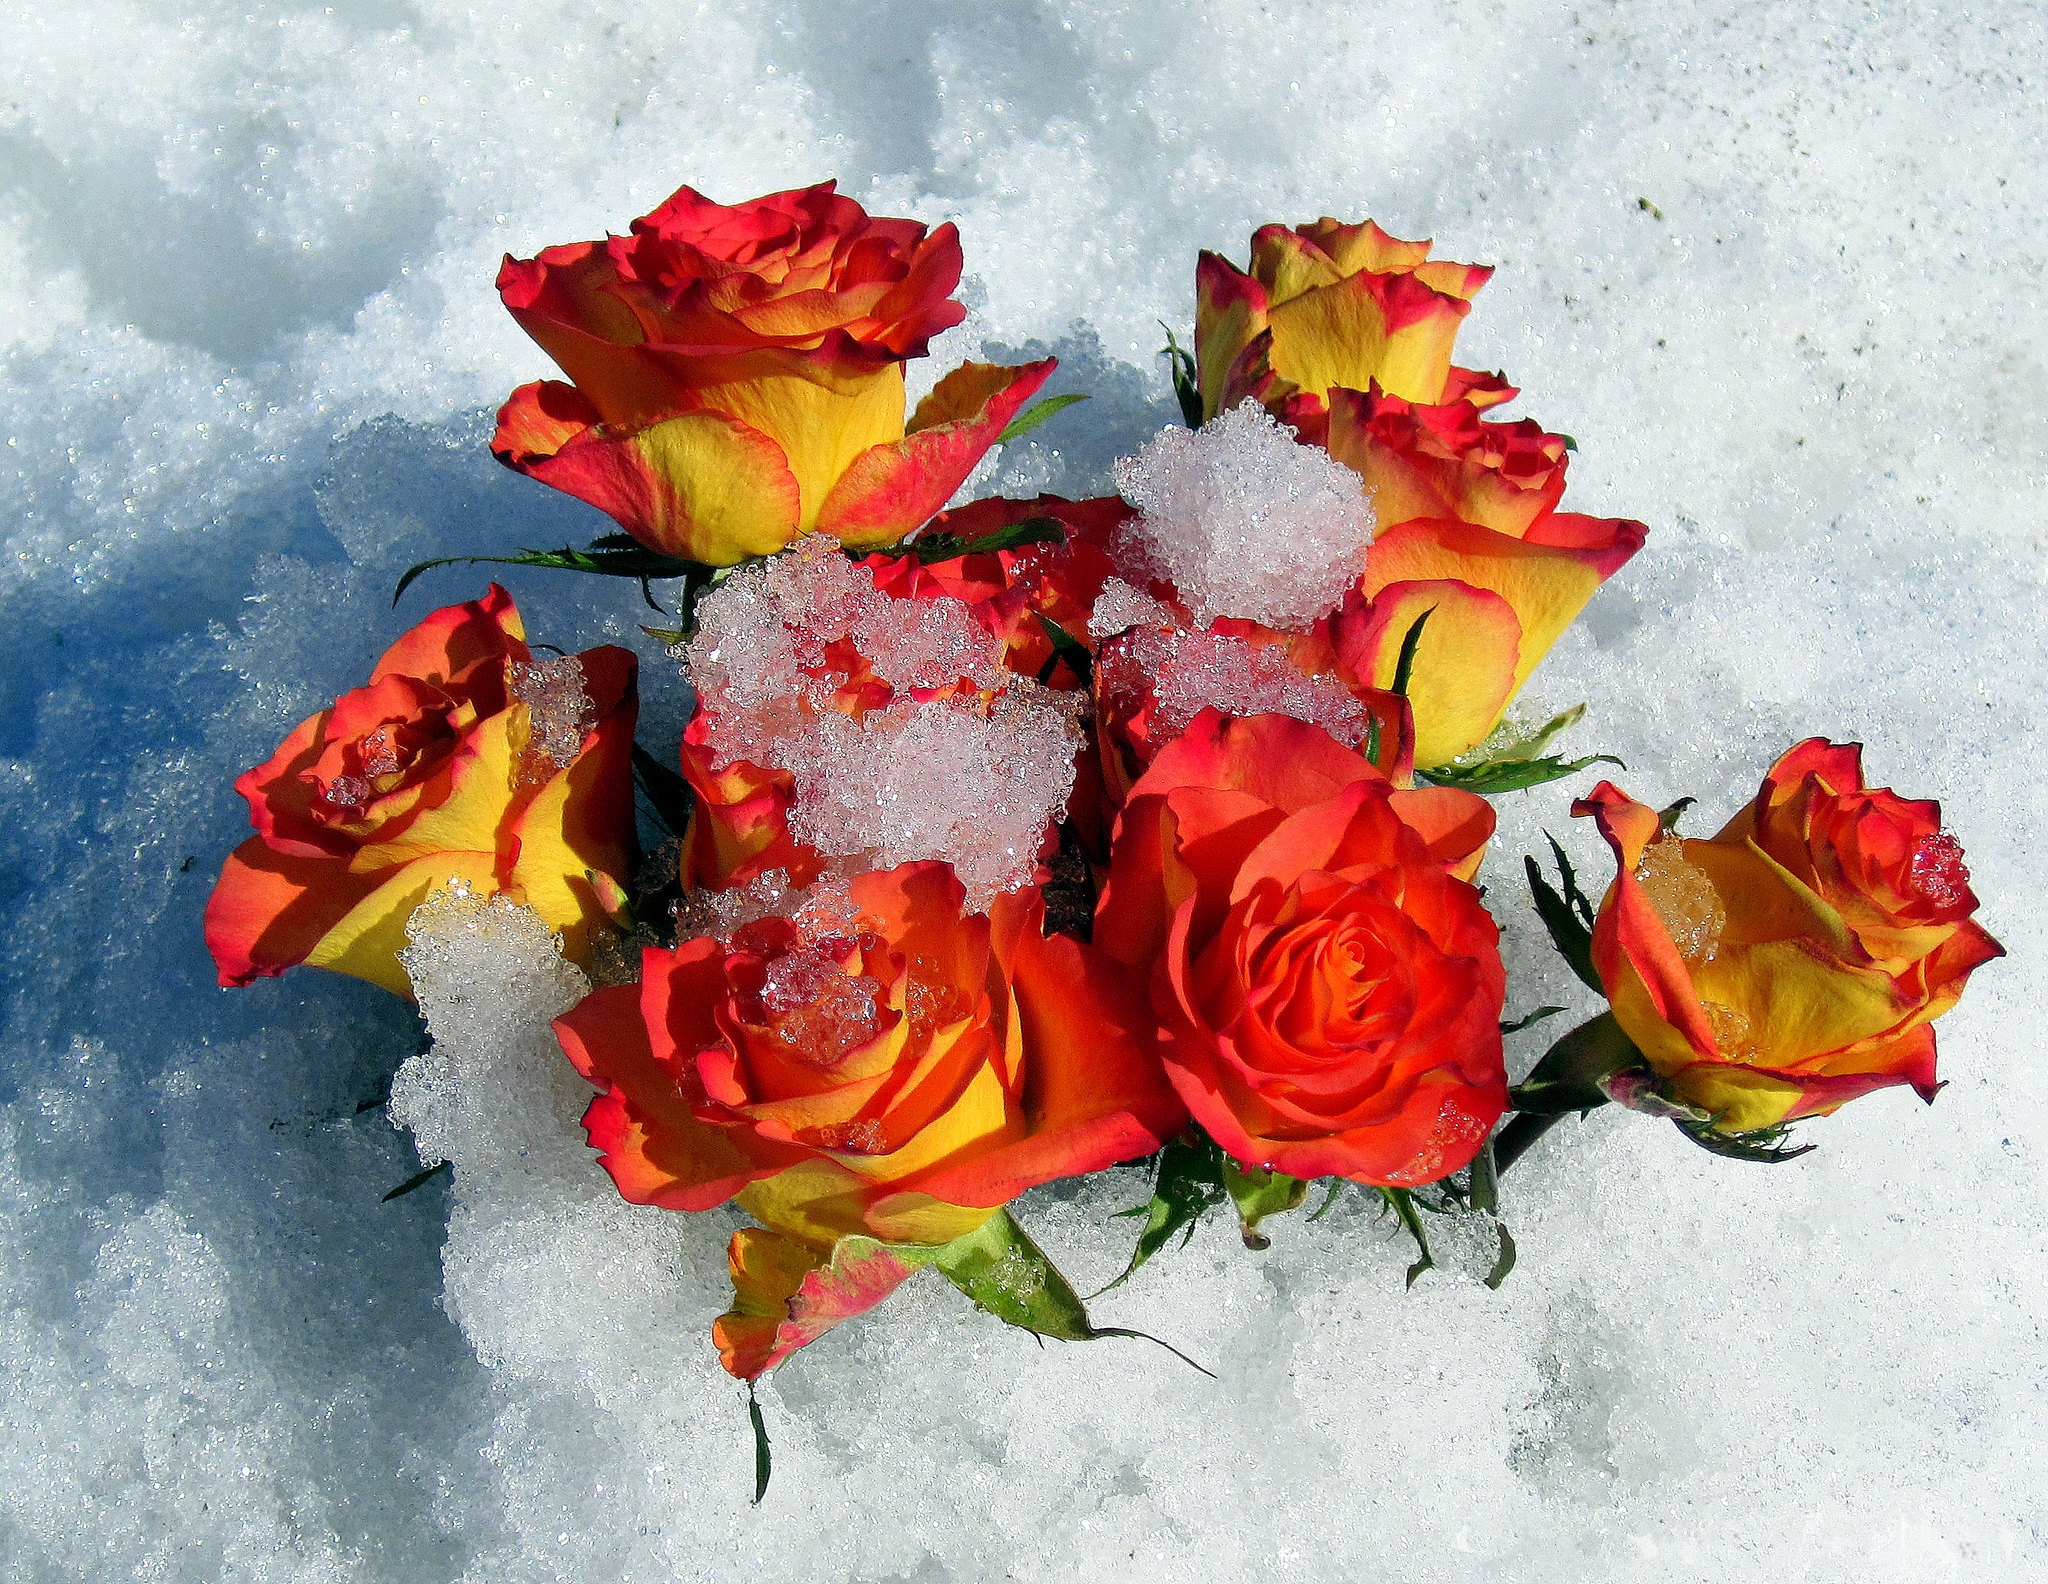 Картинки цветов в снегу. Цветы в снегу. Розы на снегу. Красивые цветы в снегу. Цветы зимой.